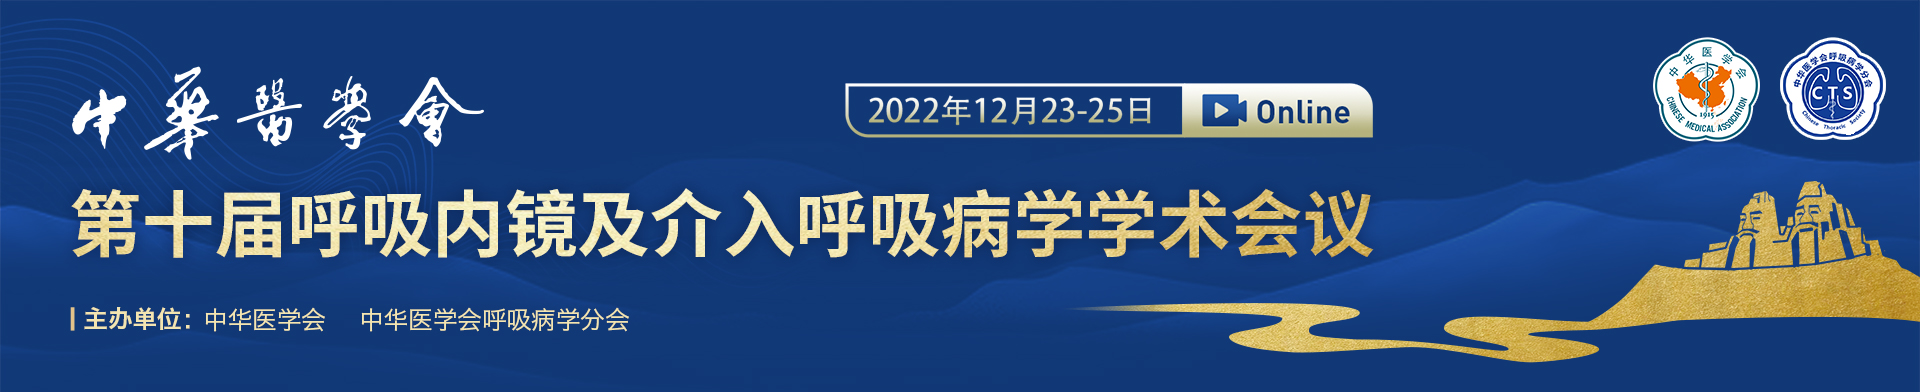 中华医学会第十届全国呼吸内镜和介入呼吸病学学术会议